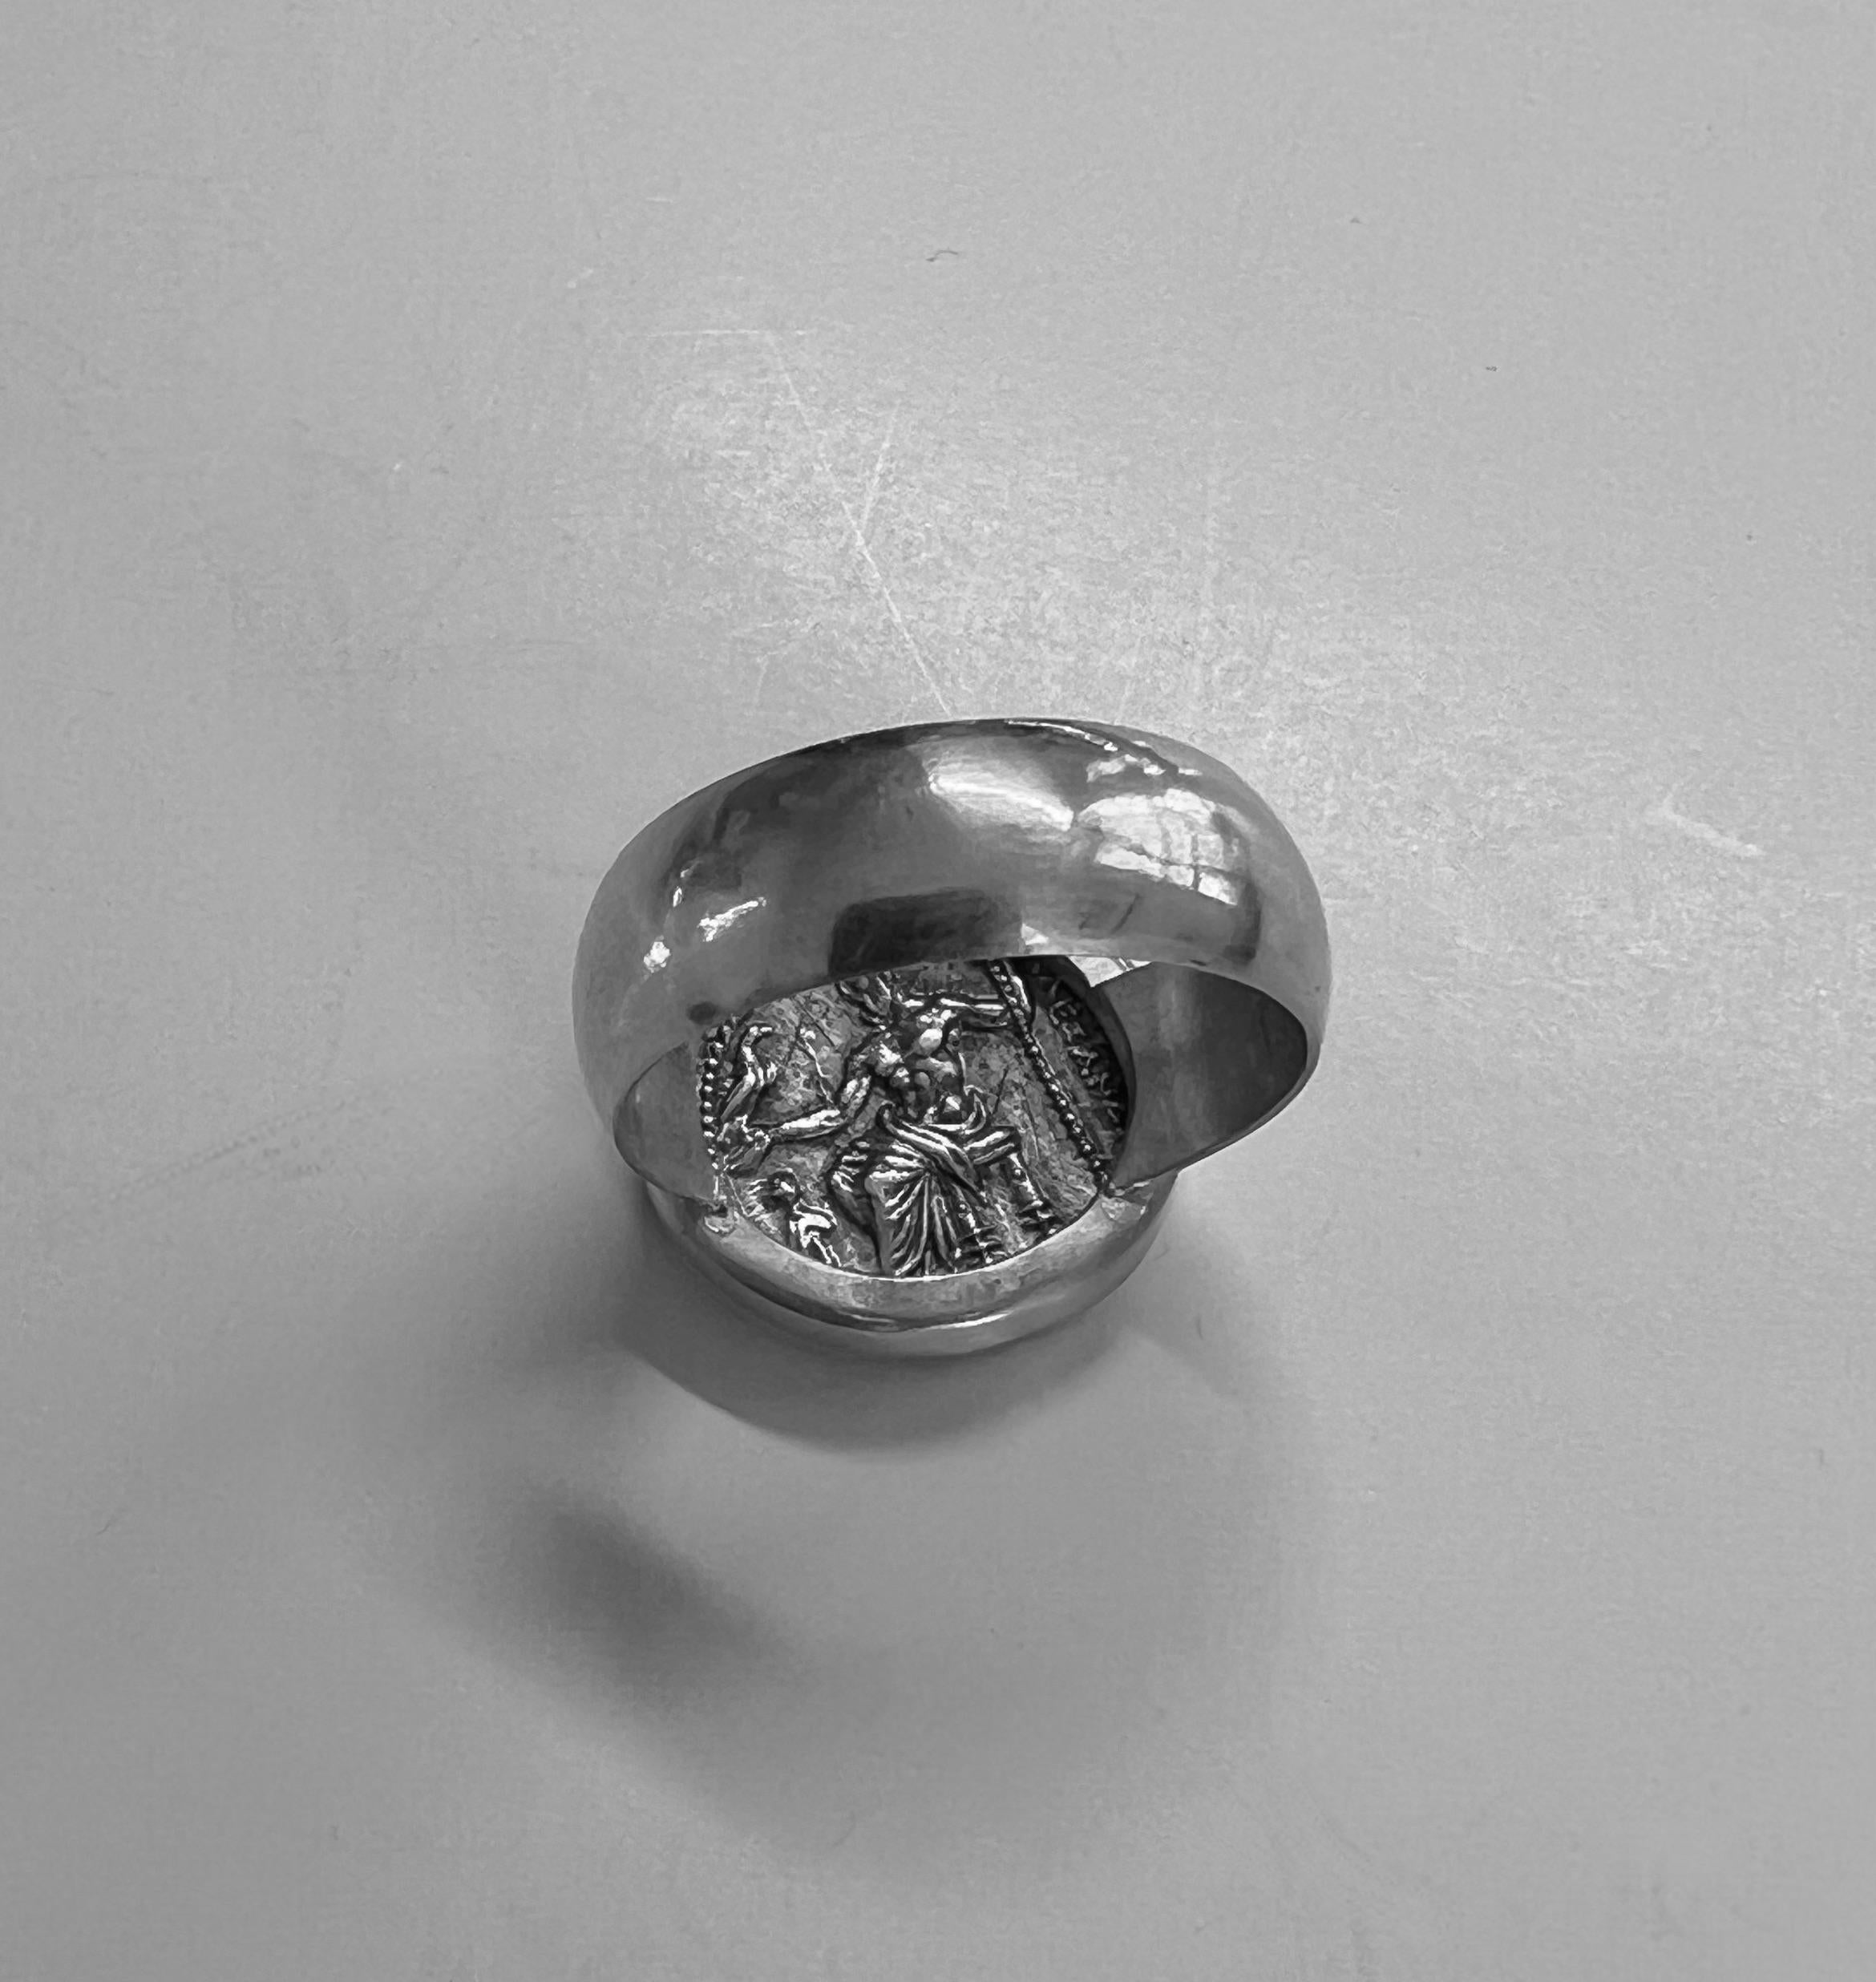 22 Karat Ring mit echter antiker Silberdrachme von Alexander dem Großen von Mazedonien
Die Alexander-Münze zeigt Herakles (oder Herkules, wie ihn die Römer nannten) auf der Vorderseite. Auf der Rückseite war der oberste Gott Zeus abgebildet, der